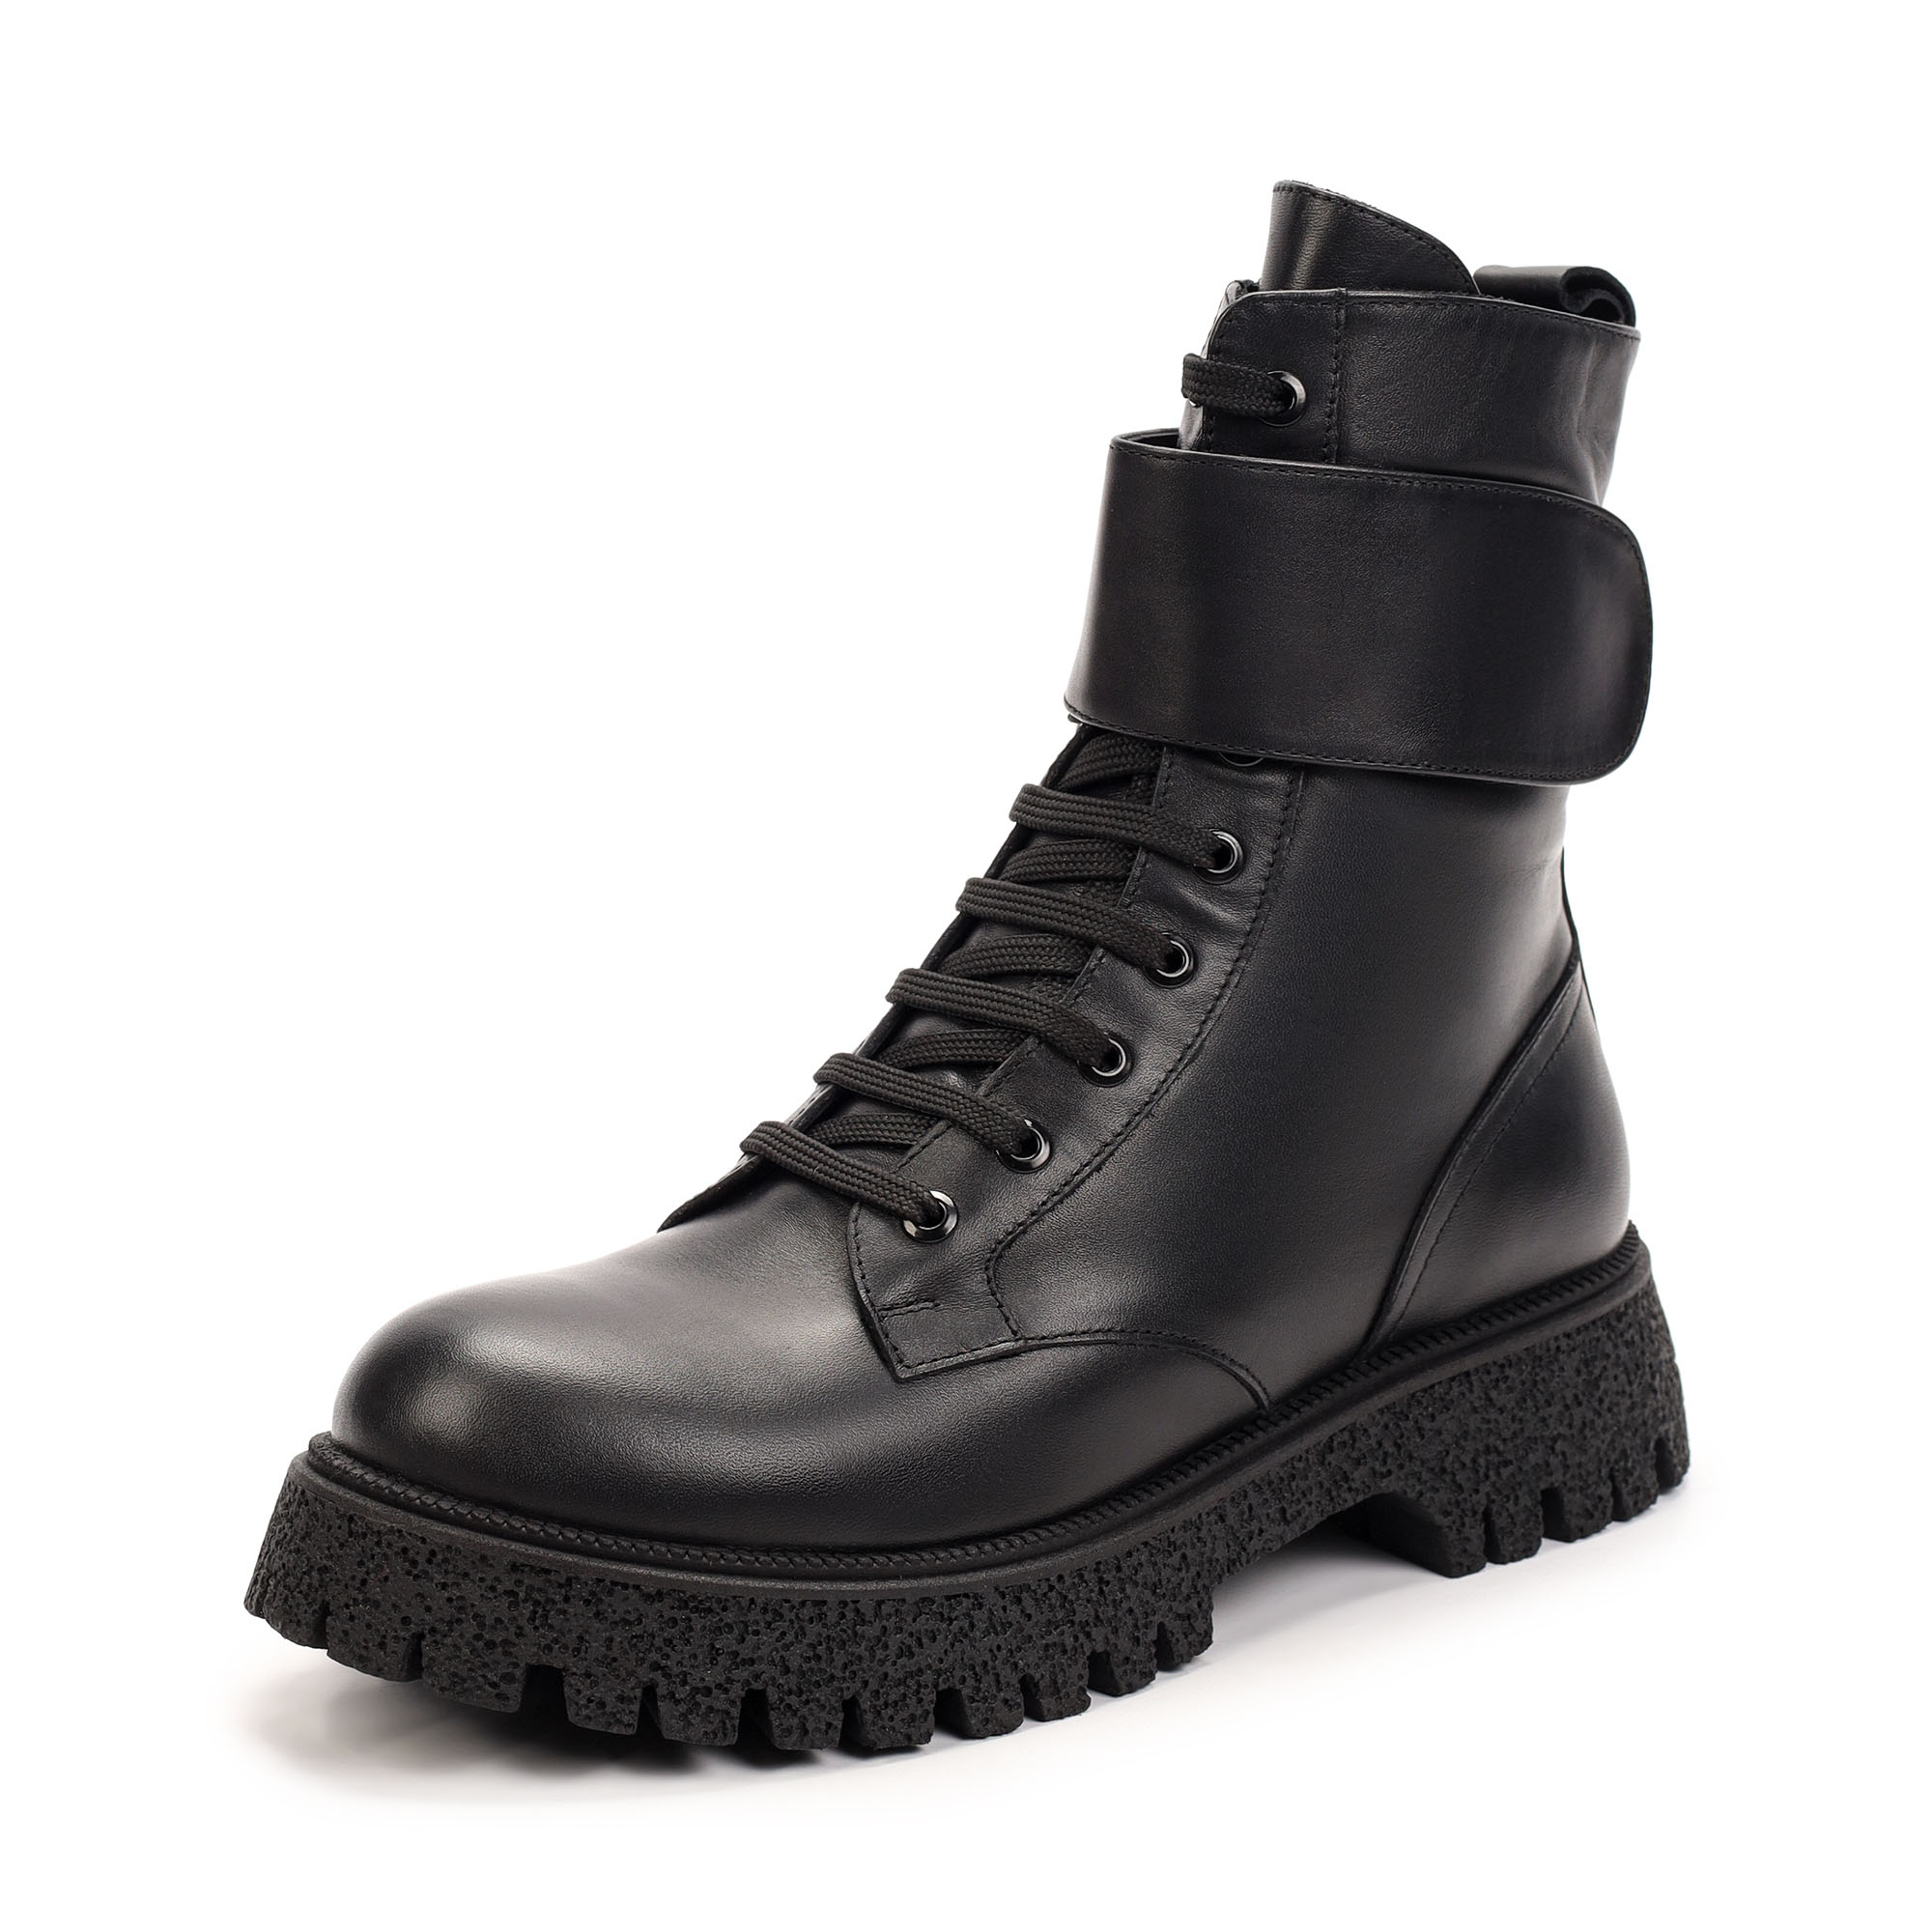 Ботинки Thomas Munz 506-163A-20202, цвет черный, размер 38 - фото 2